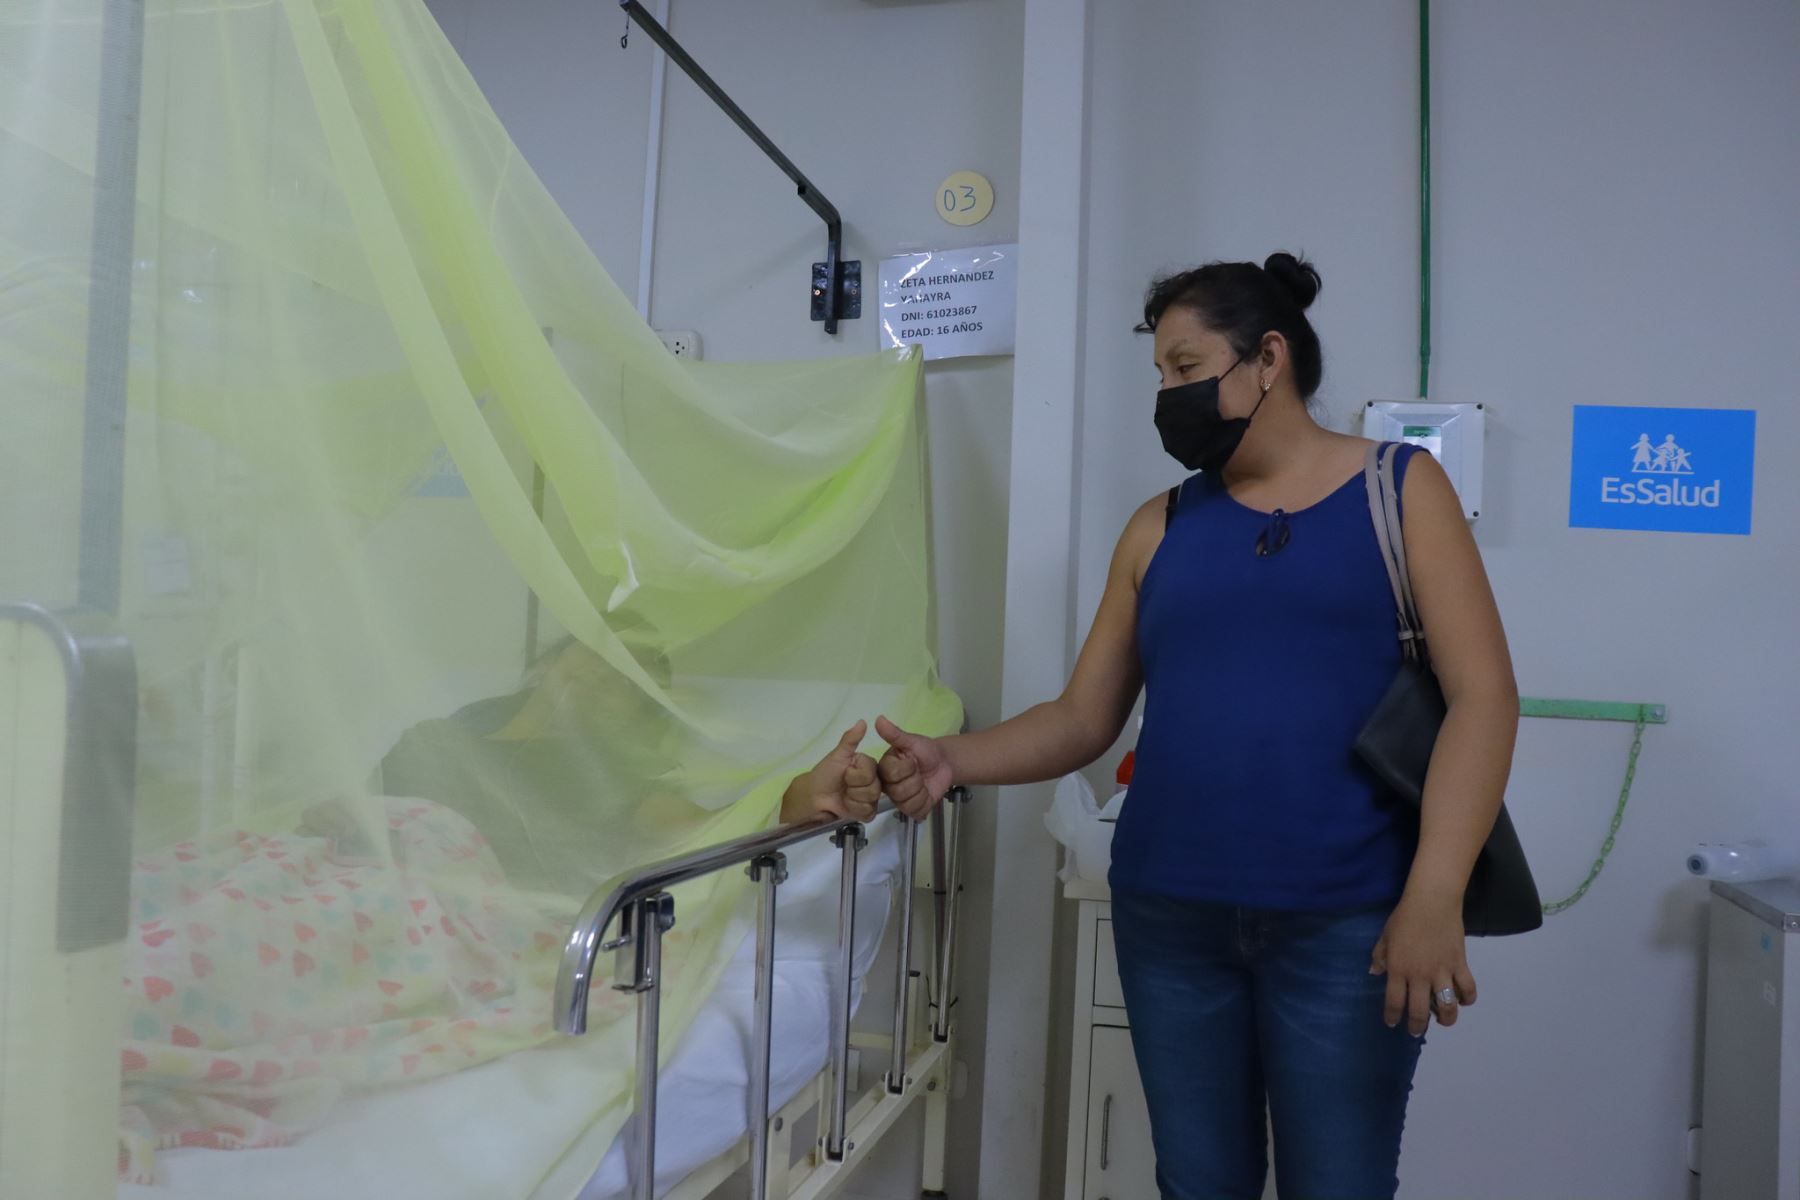 Con el objetivo de fortalecer las atenciones de pacientes afectados por dengue en el norte del país, EsSalud inició la instalación del Hospital Perú para la llegada de la brigada de médicos especialistas a la ciudad de Piura.
Foto: EsSalud